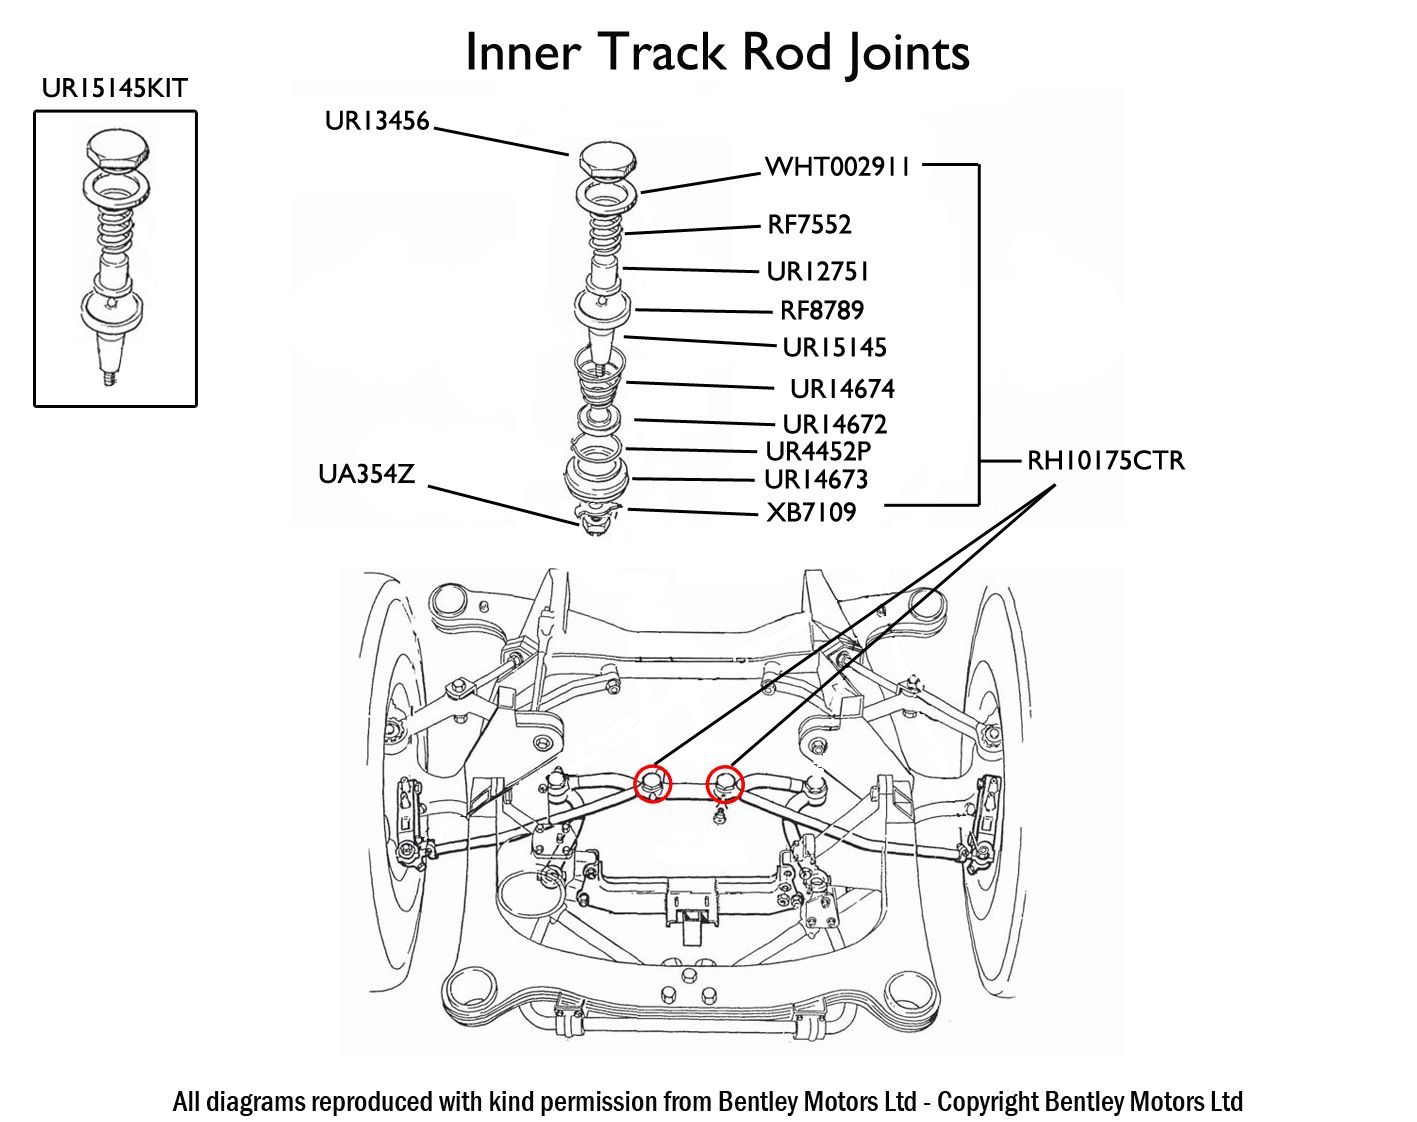 Inner Track Rod Joint